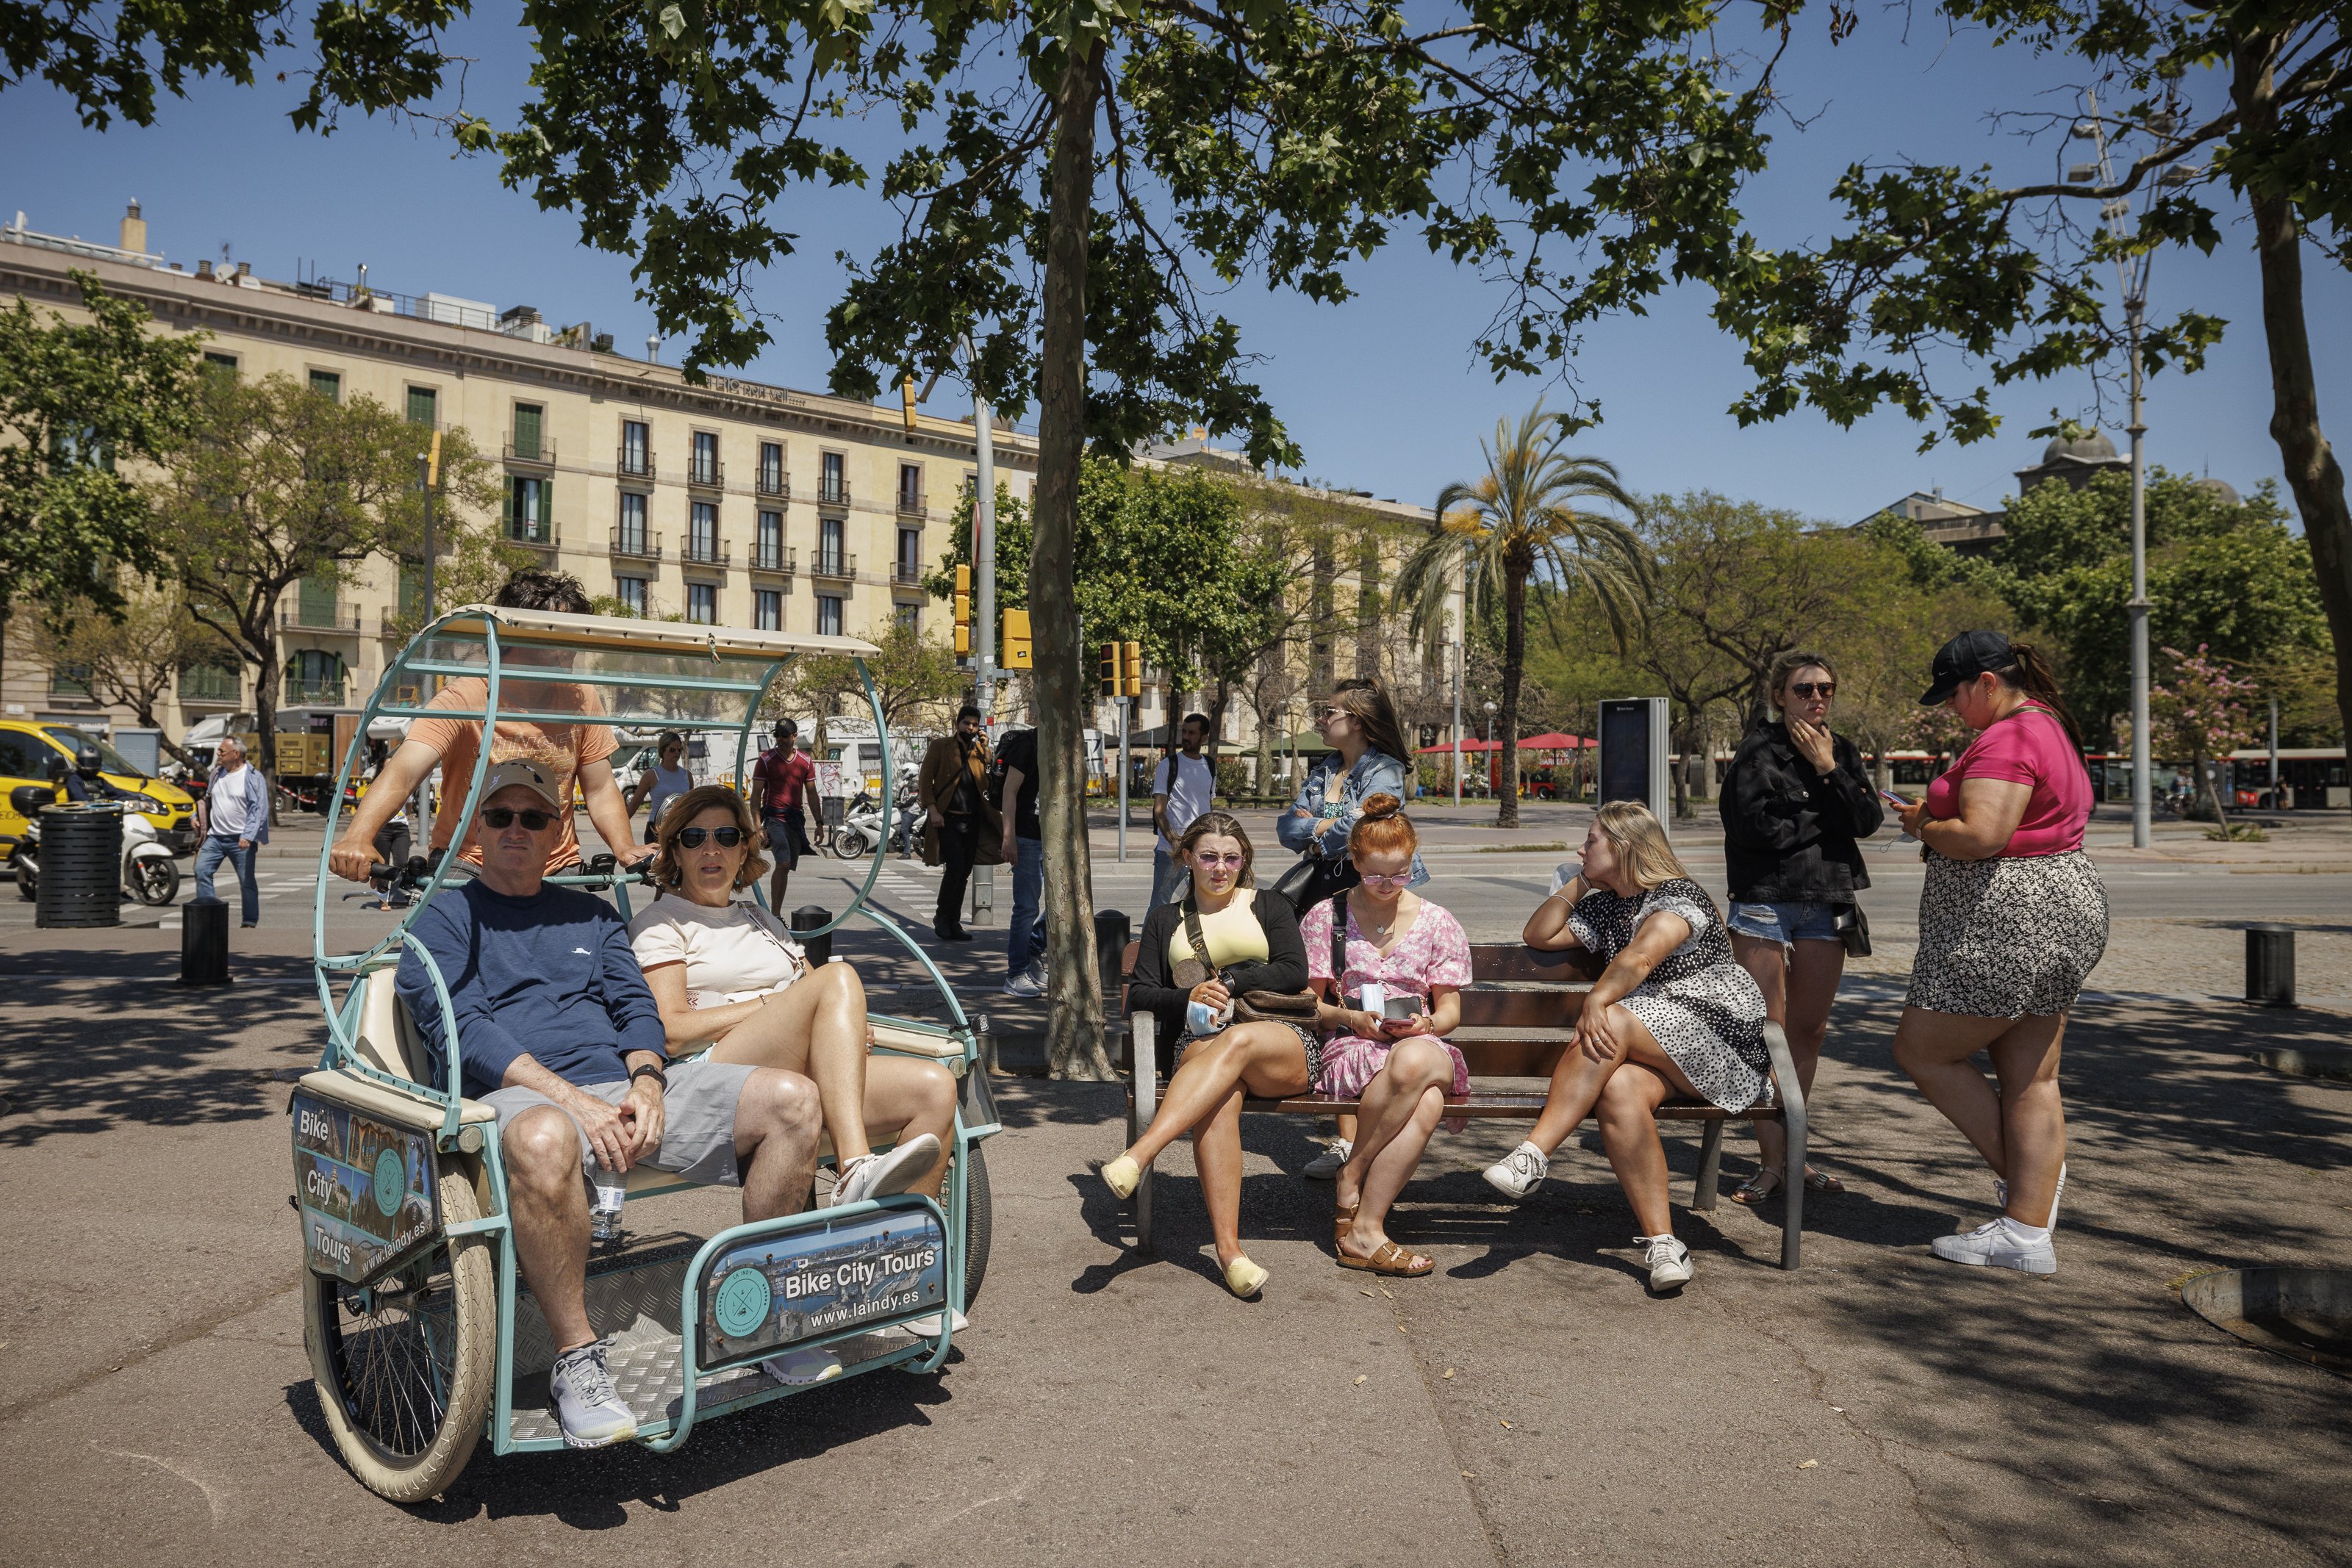 Barcelona prohibirá circular a los bicitaxis durante seis meses en cinco zonas de la ciudad